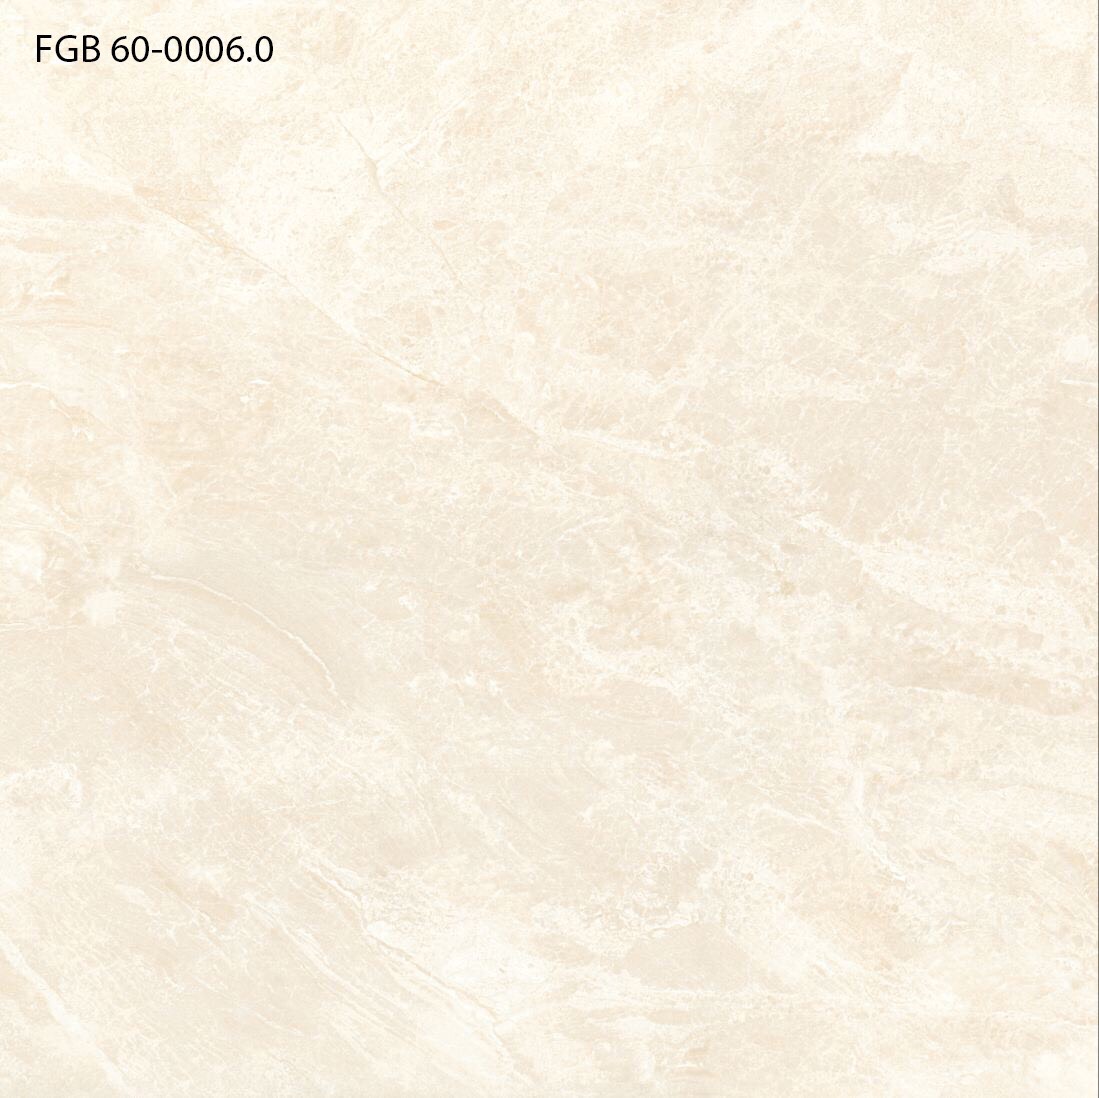 Gạch lát nền bóng kính Thạch Bàn FGB60 - 0006.0 giá rẻ